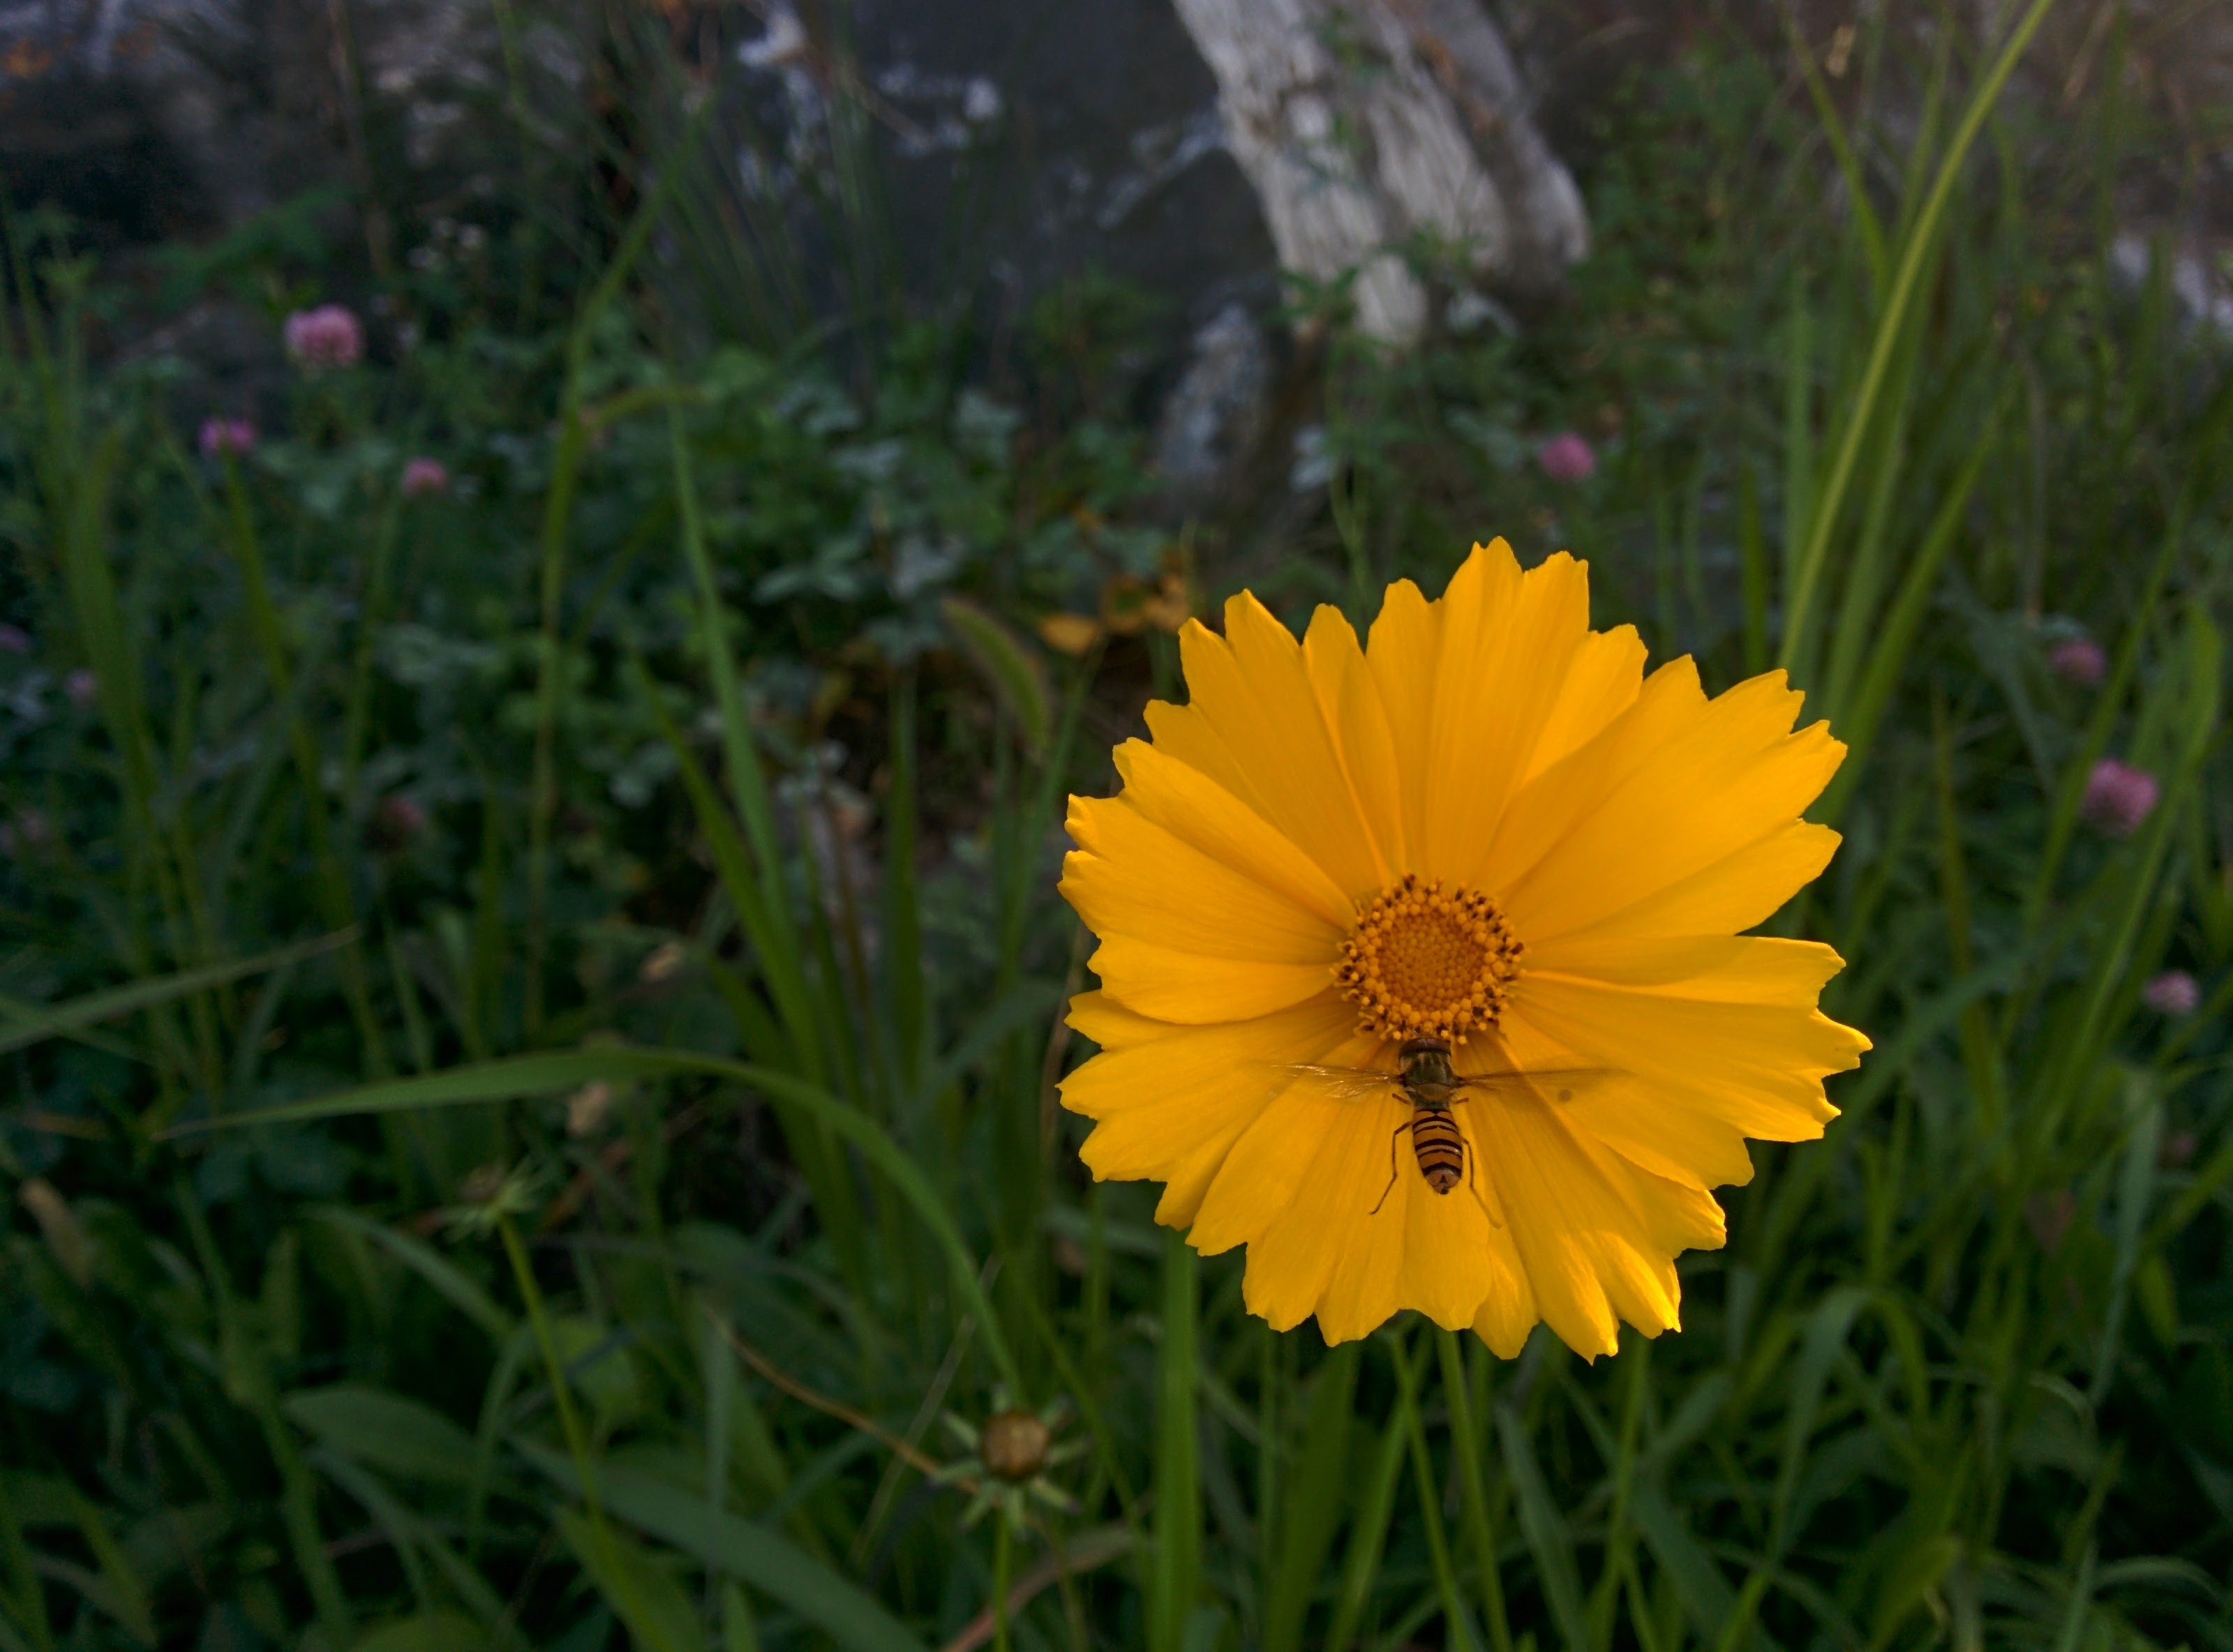 IMG_20151025_152359.jpg 황금색 큰금계국 꽃에 앉은 호리꽃등에